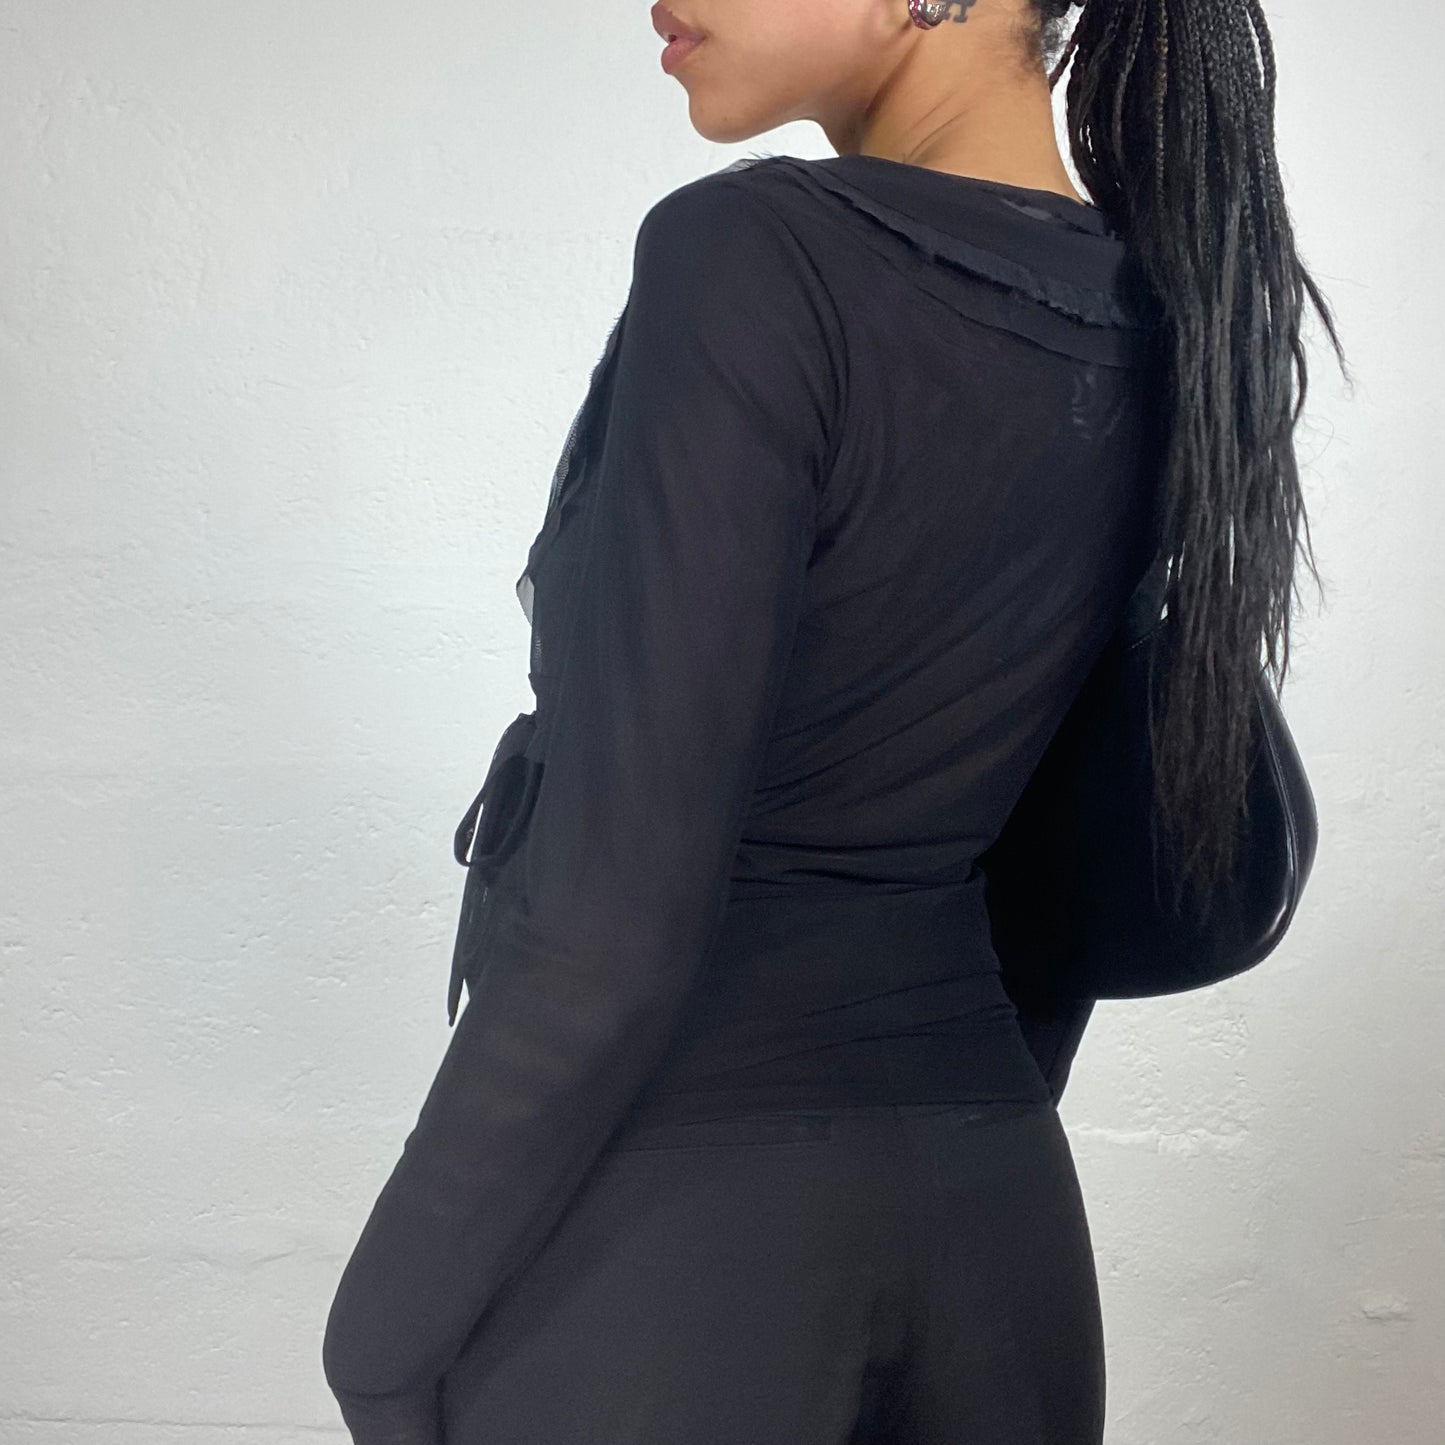 Vintage 2000’s Boho Girl Black Chiffon Layered Wrap Up Longsleeve Bolero Style Top (M)